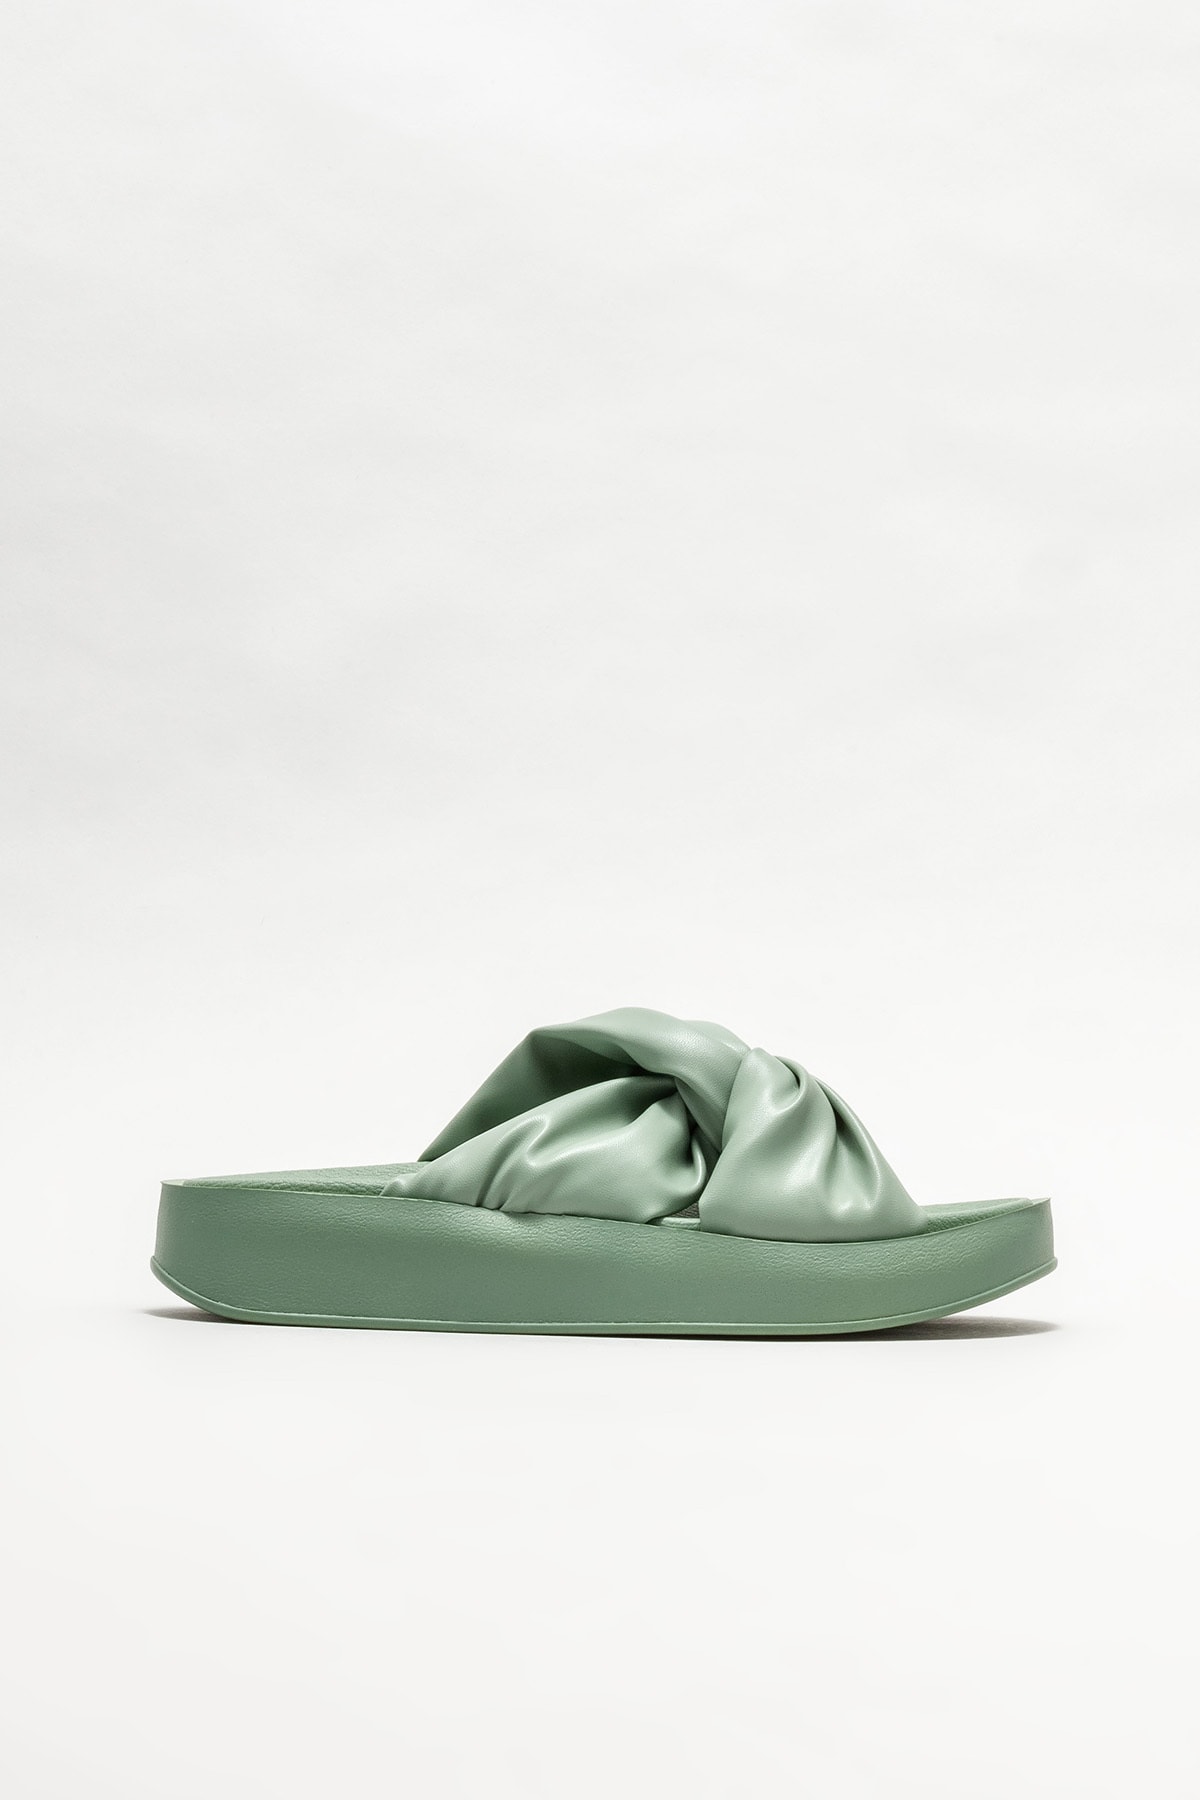 Elle Shoes Kadın Yeşil Dolgu Topuklu Terlik